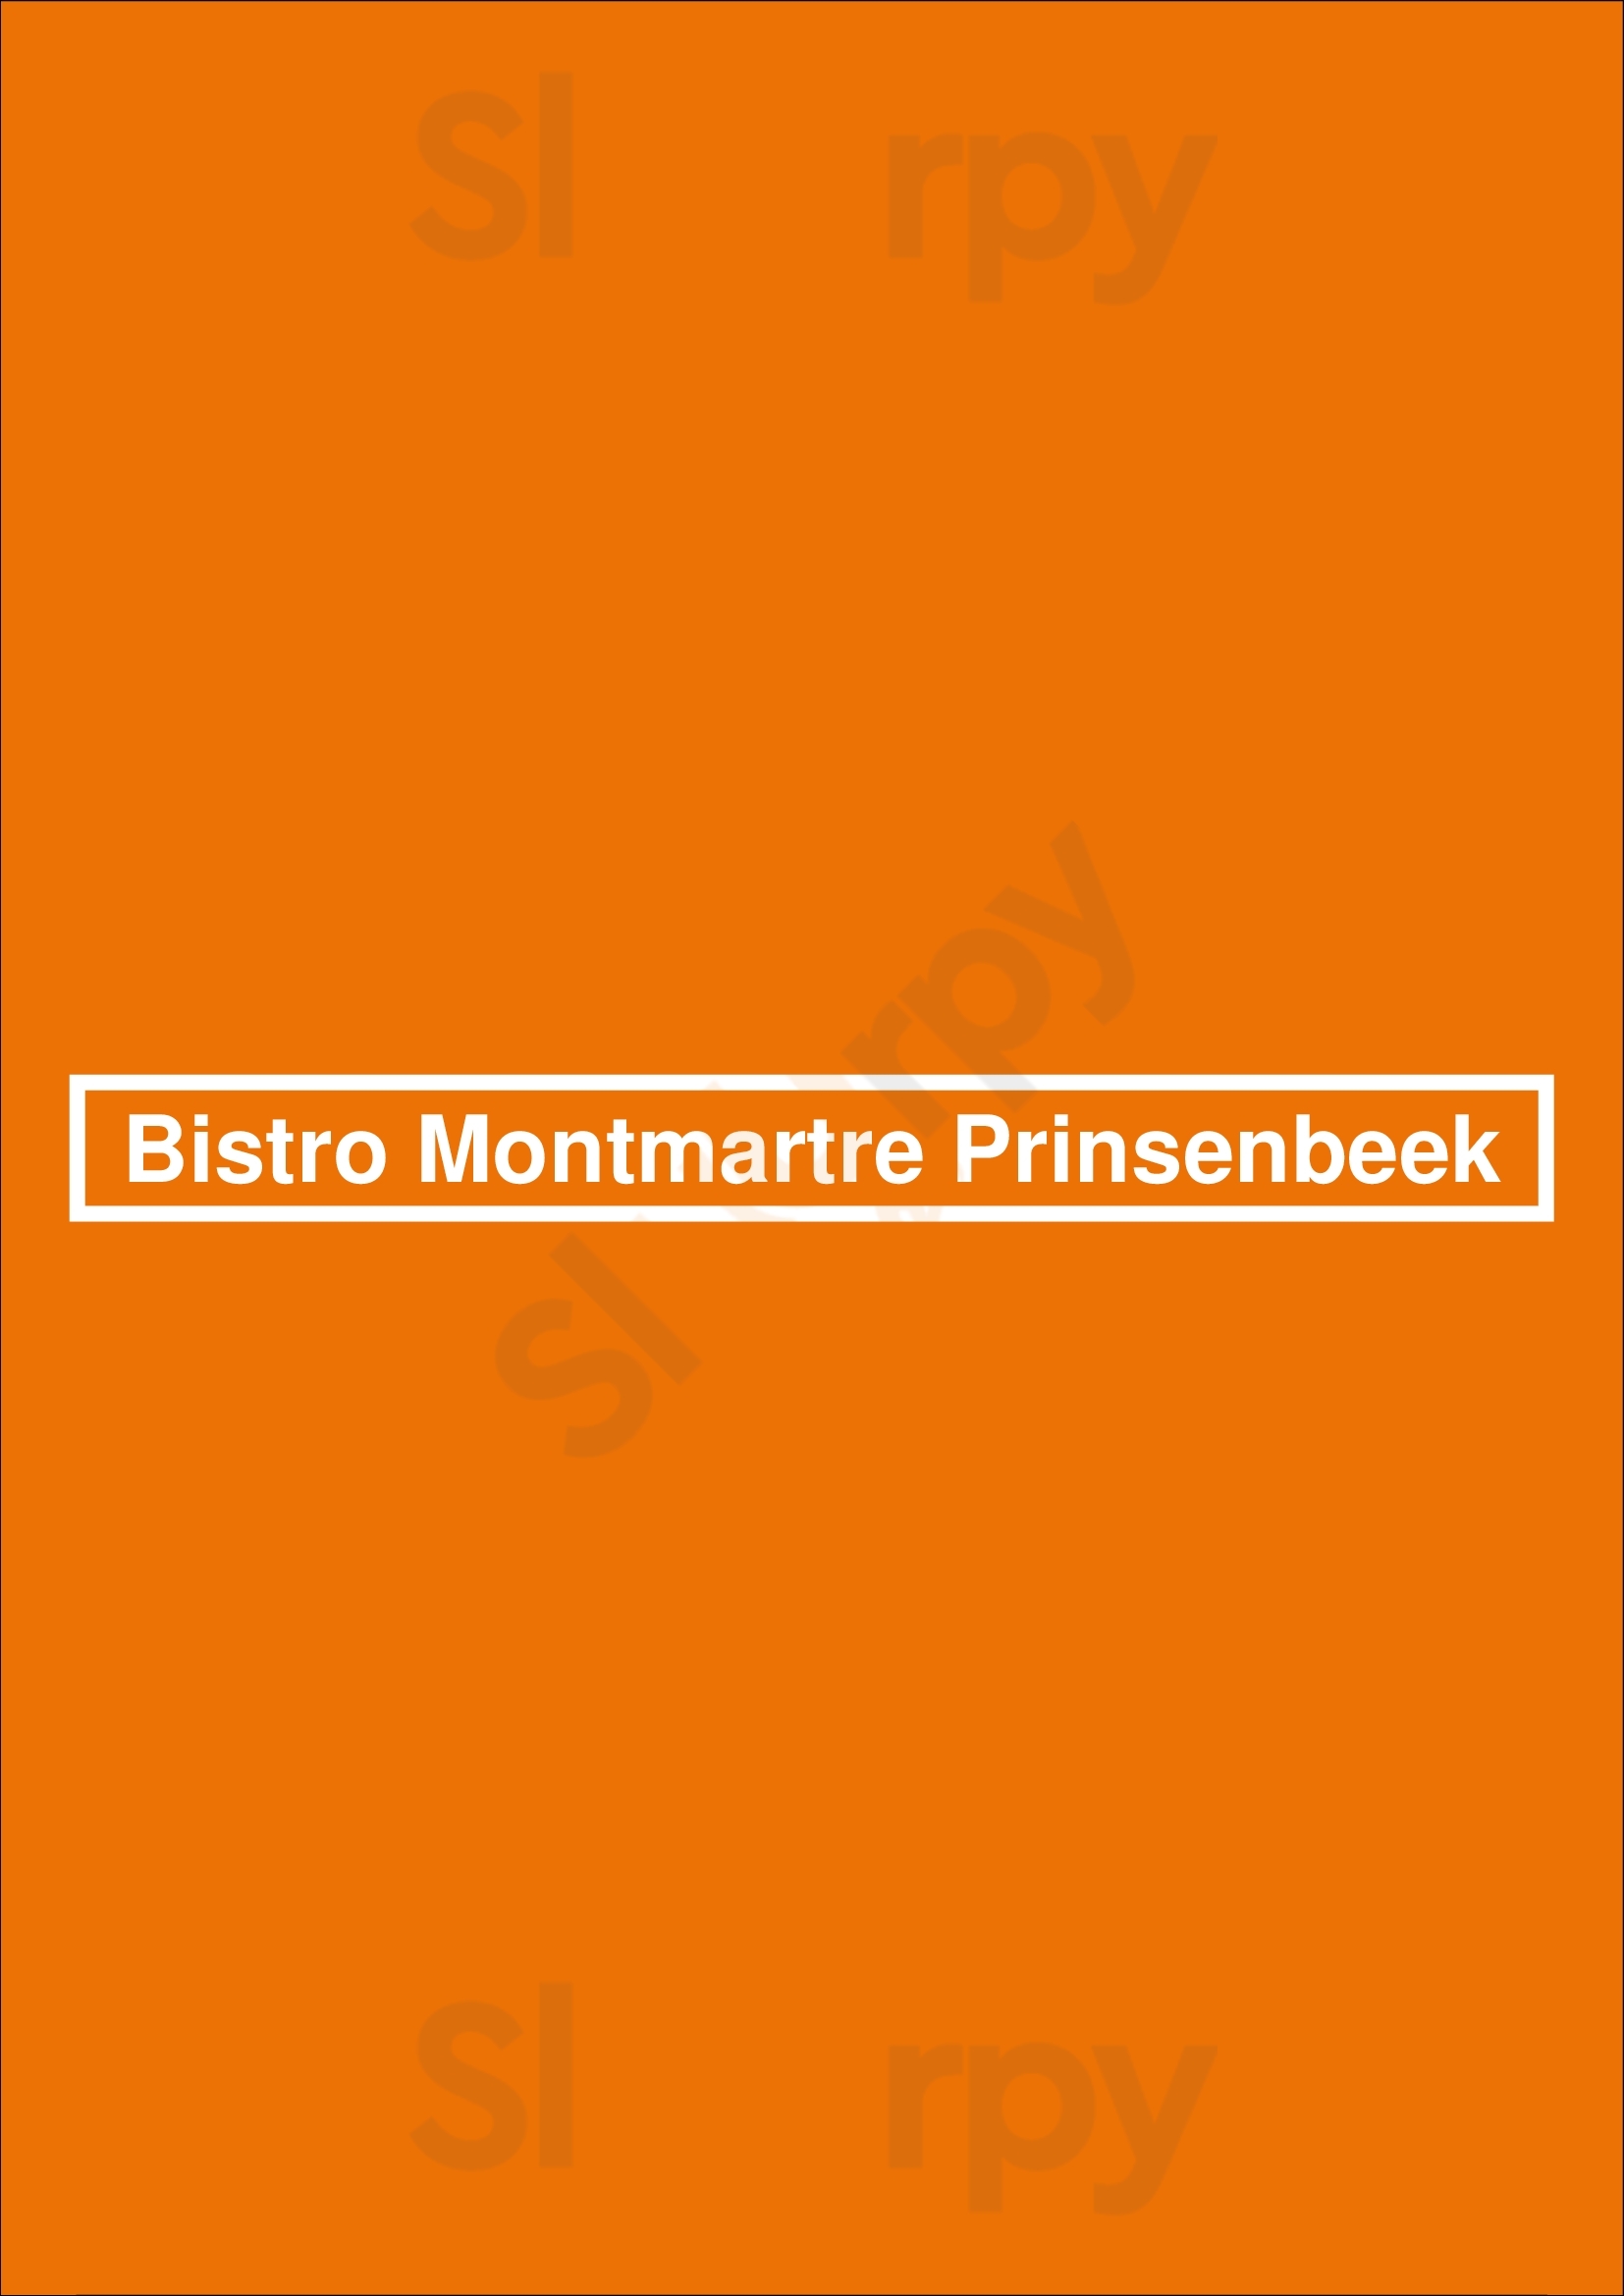 Bistro Montmartre Prinsenbeek Prinsenbeek Menu - 1